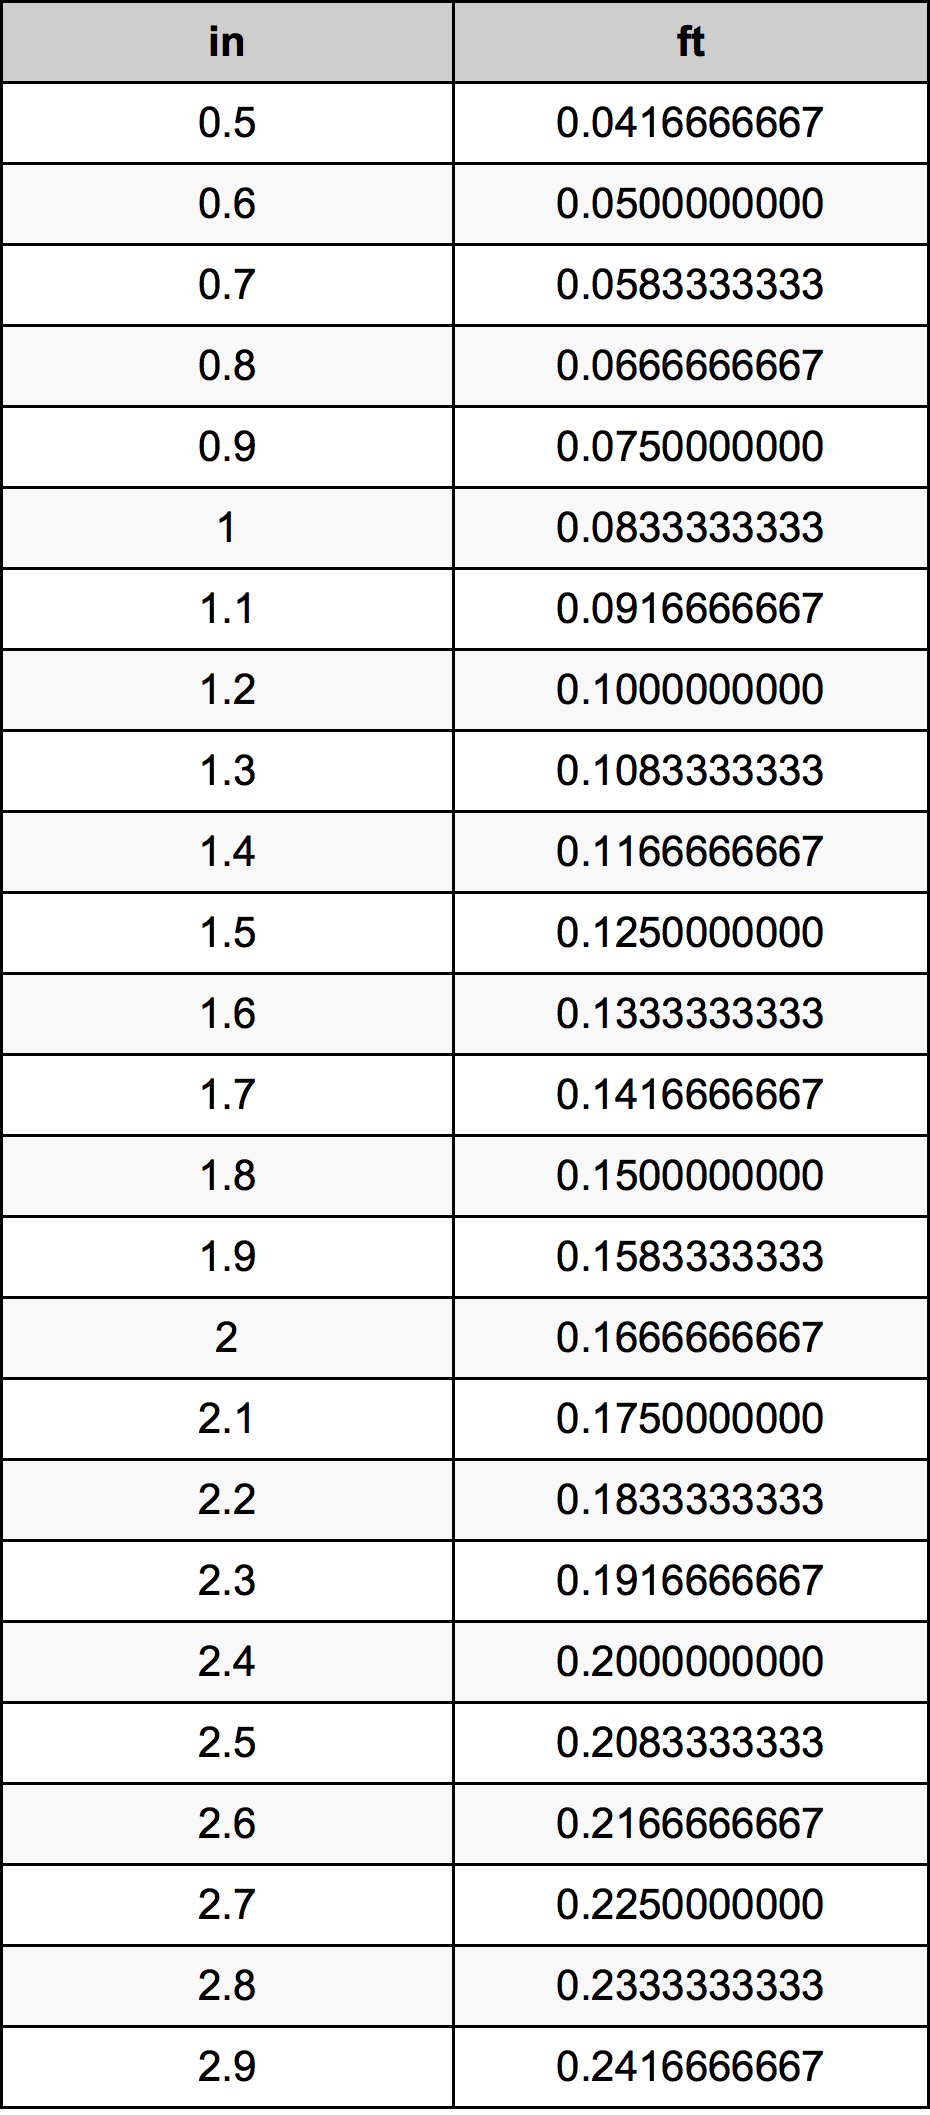 1.7 Pulzier konverżjoni tabella